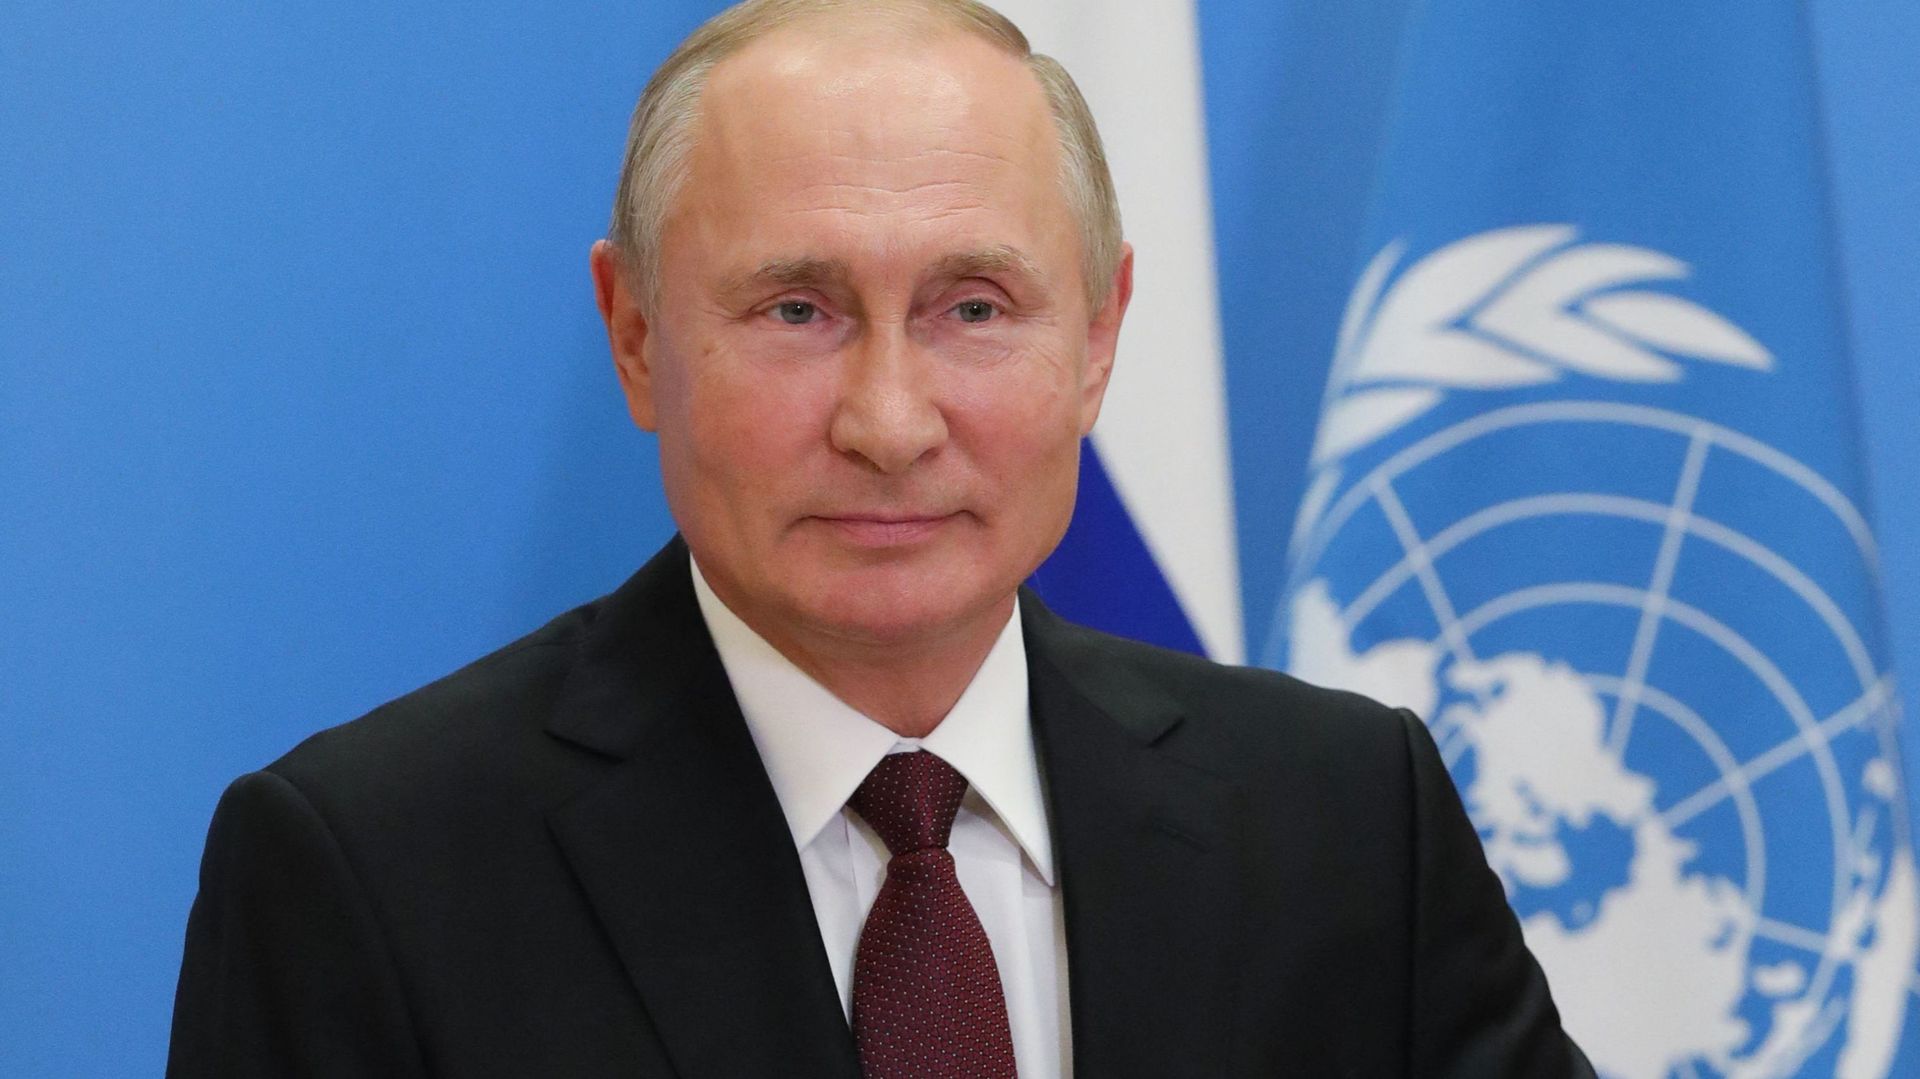 Vladimir Poutine lors d’un sommet de l’ONU en 2020